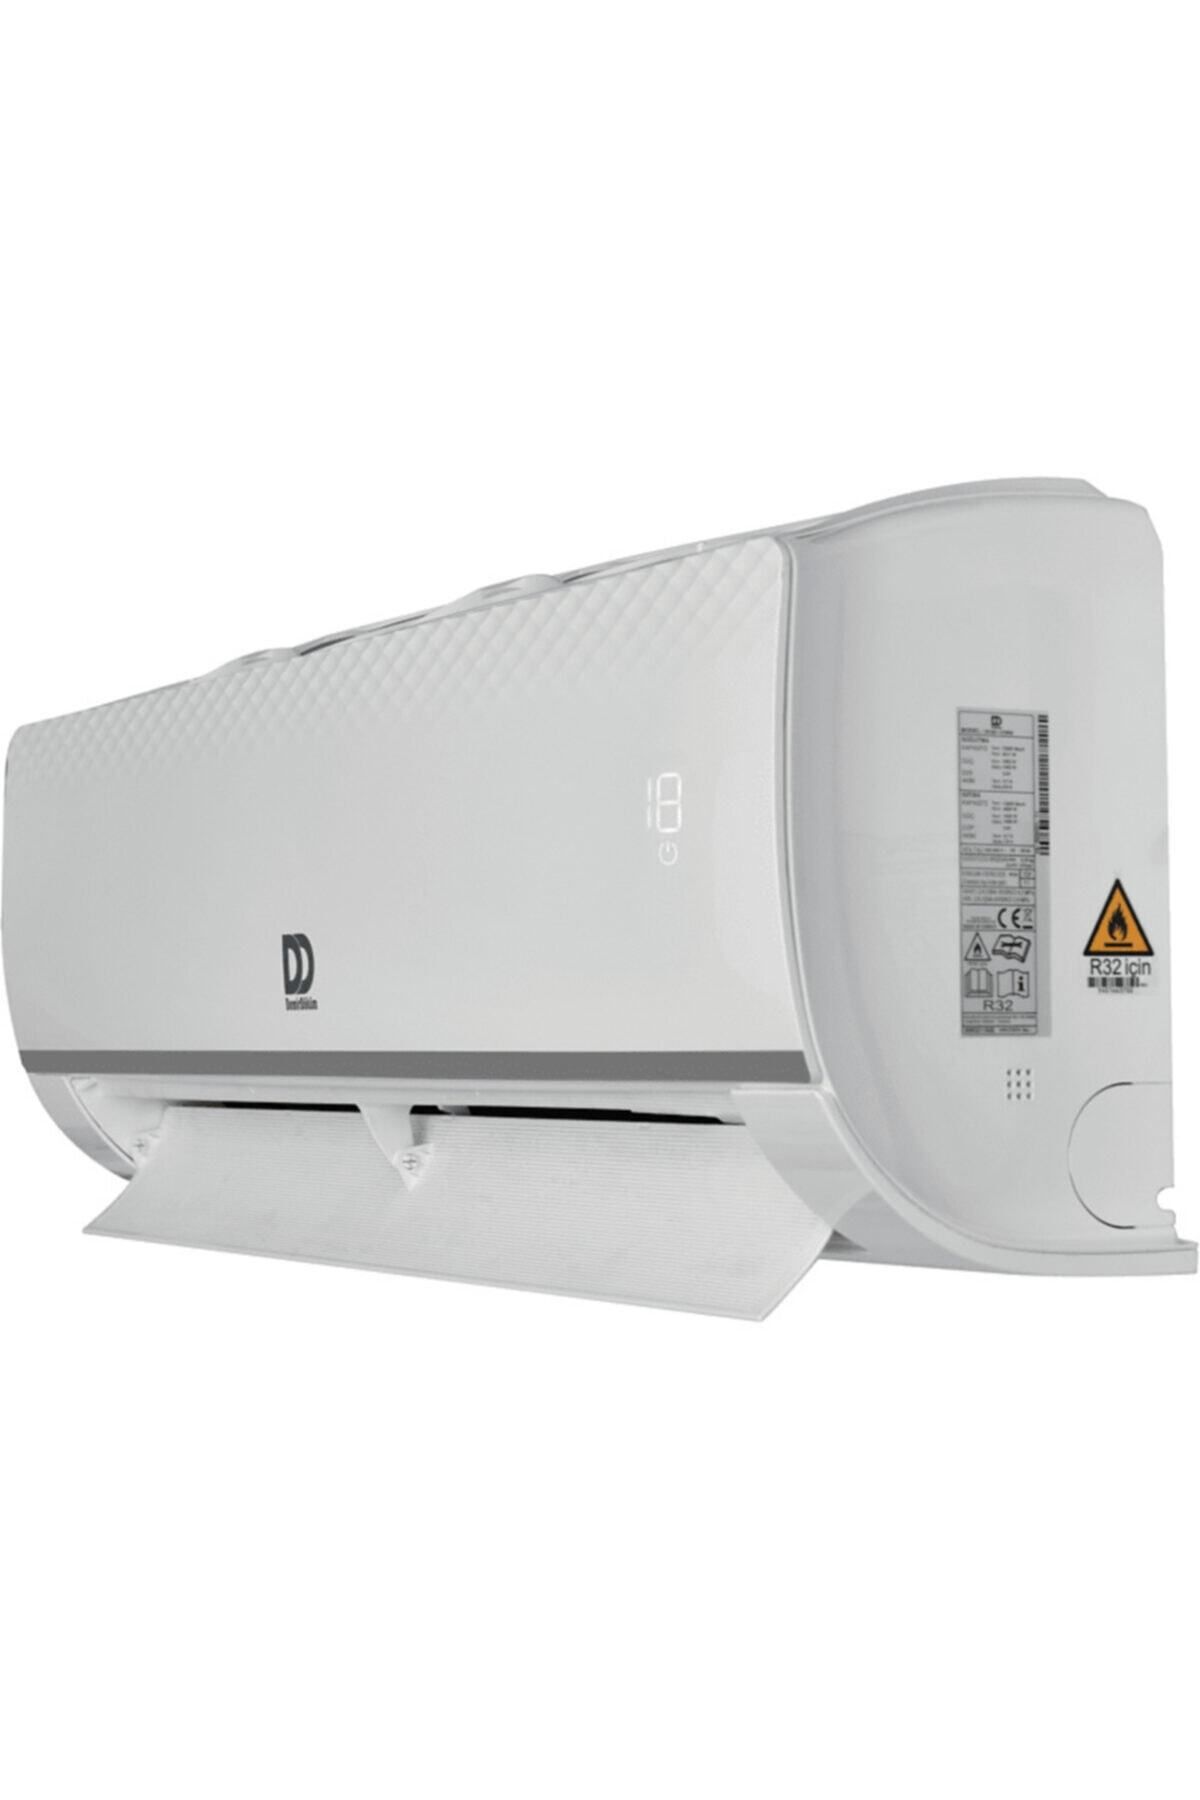 Demirdöküm Kion A++ Enerji Sınıfı 24000 Btu Inverter Split Klima Beyaz